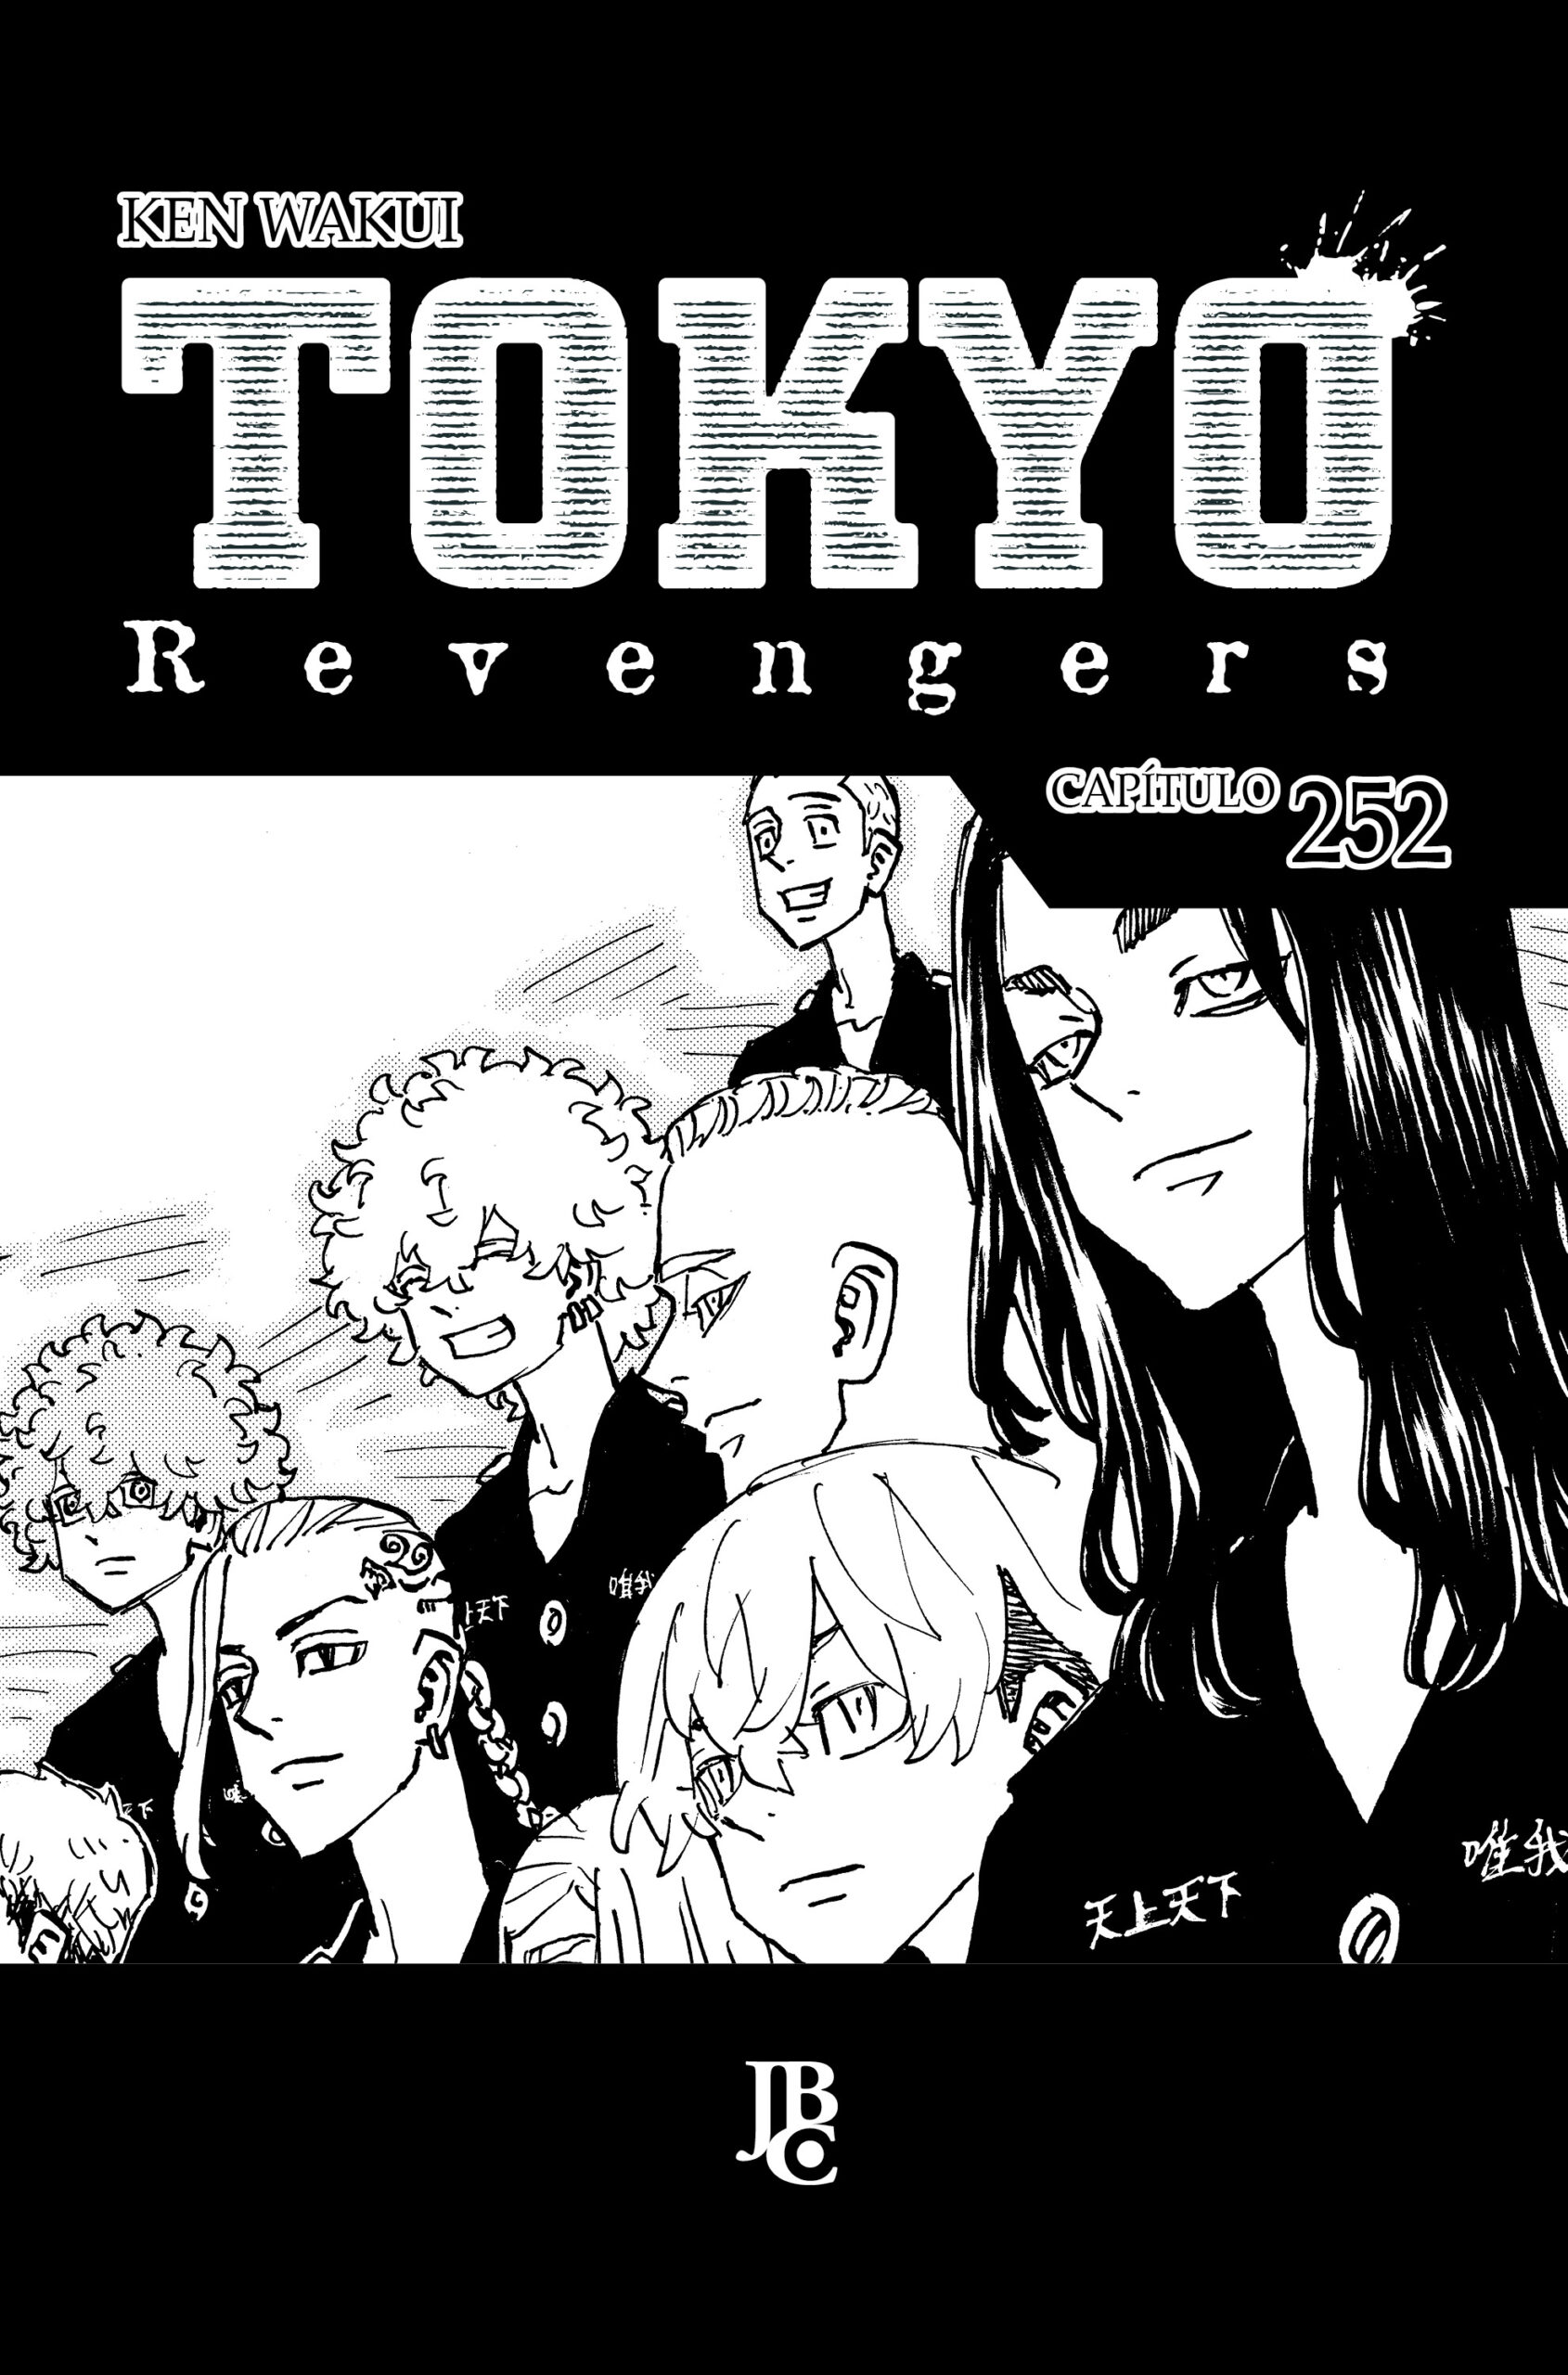 Tokyo Revengers #01 - Mangás JBC